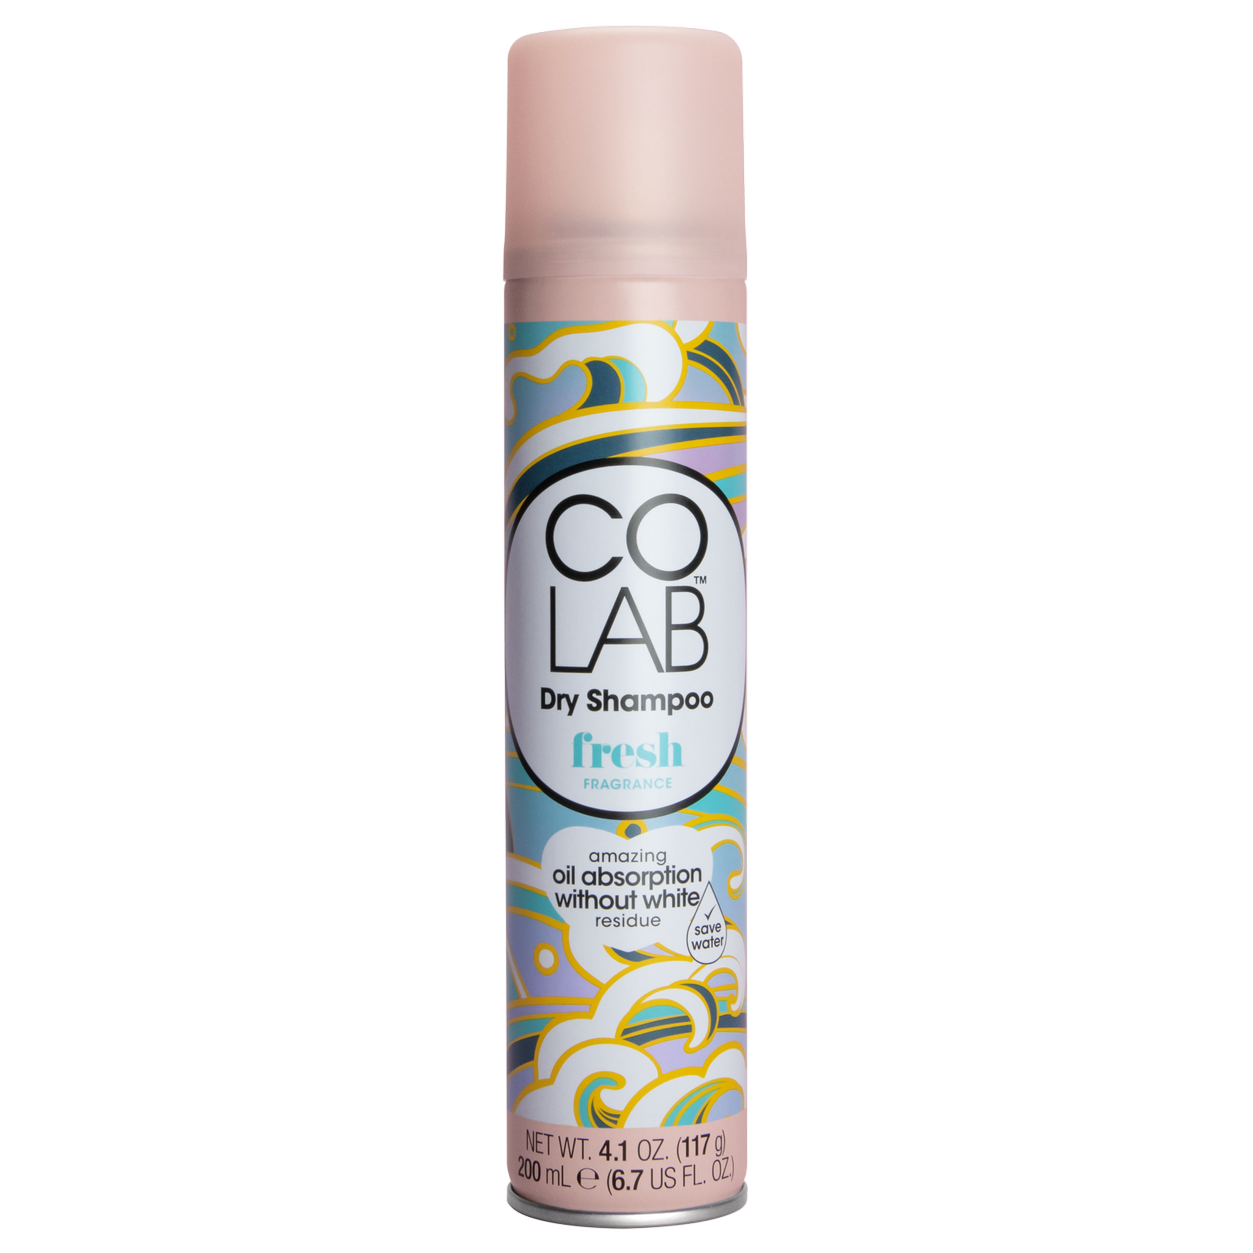 COLAB Fresh Dry Shampoo 200 ml